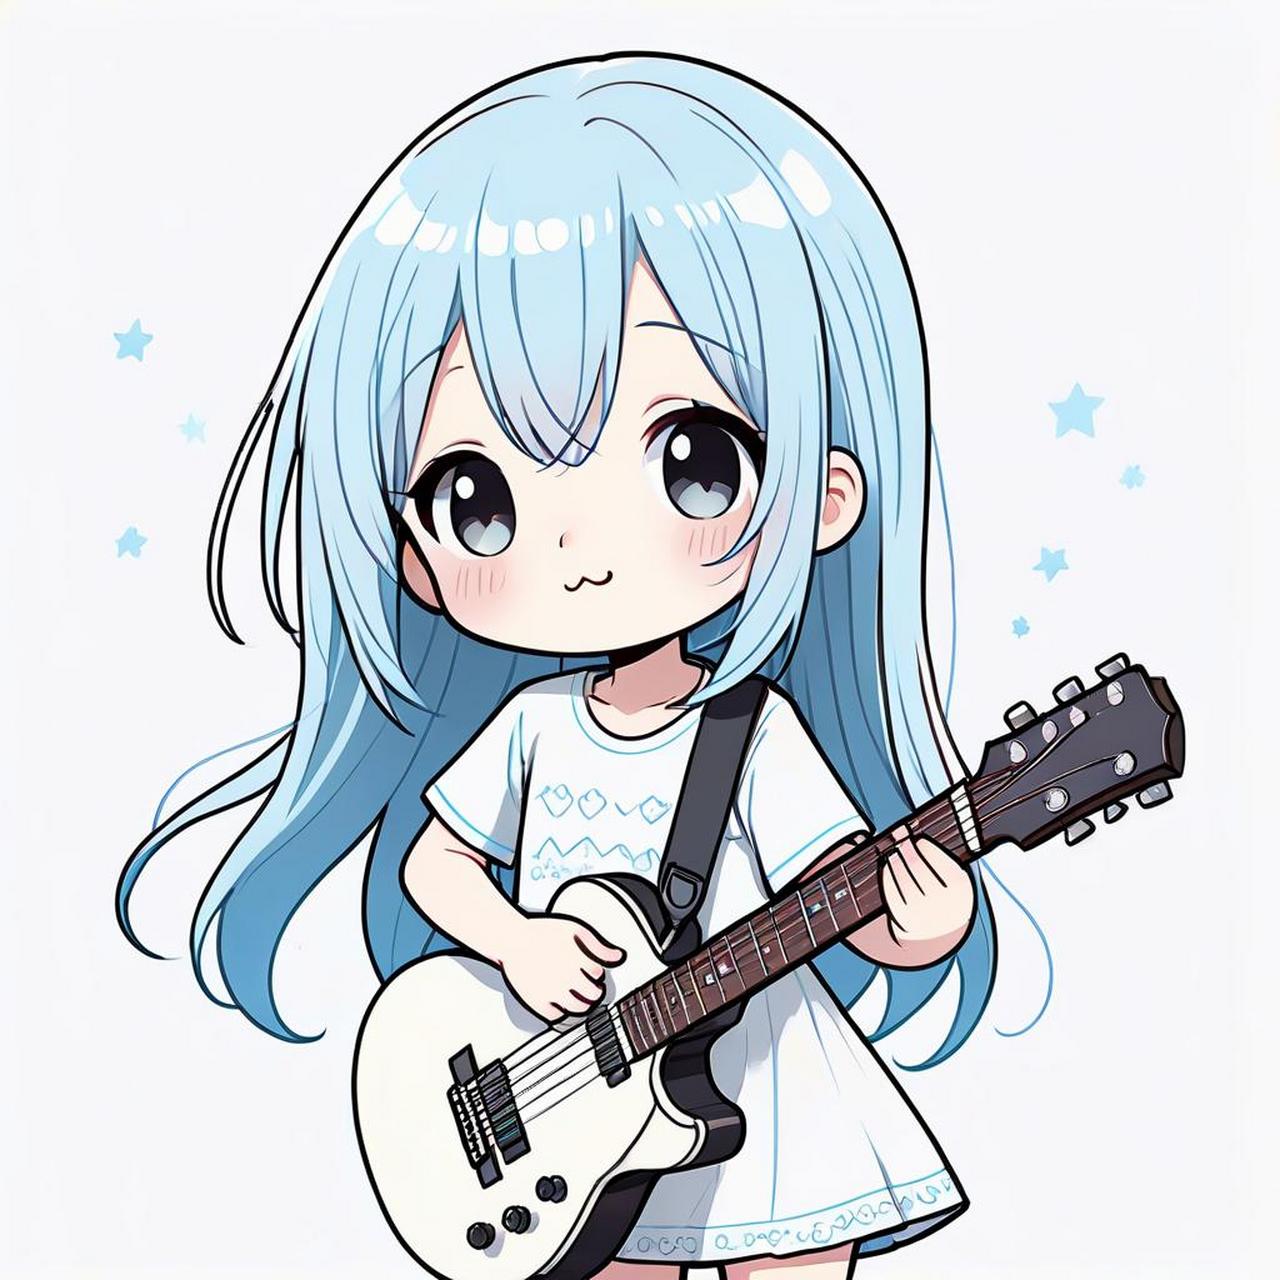 女生弹吉他头像 女生头像 优质头像 二次元 氛围感拉满的头像 二次元